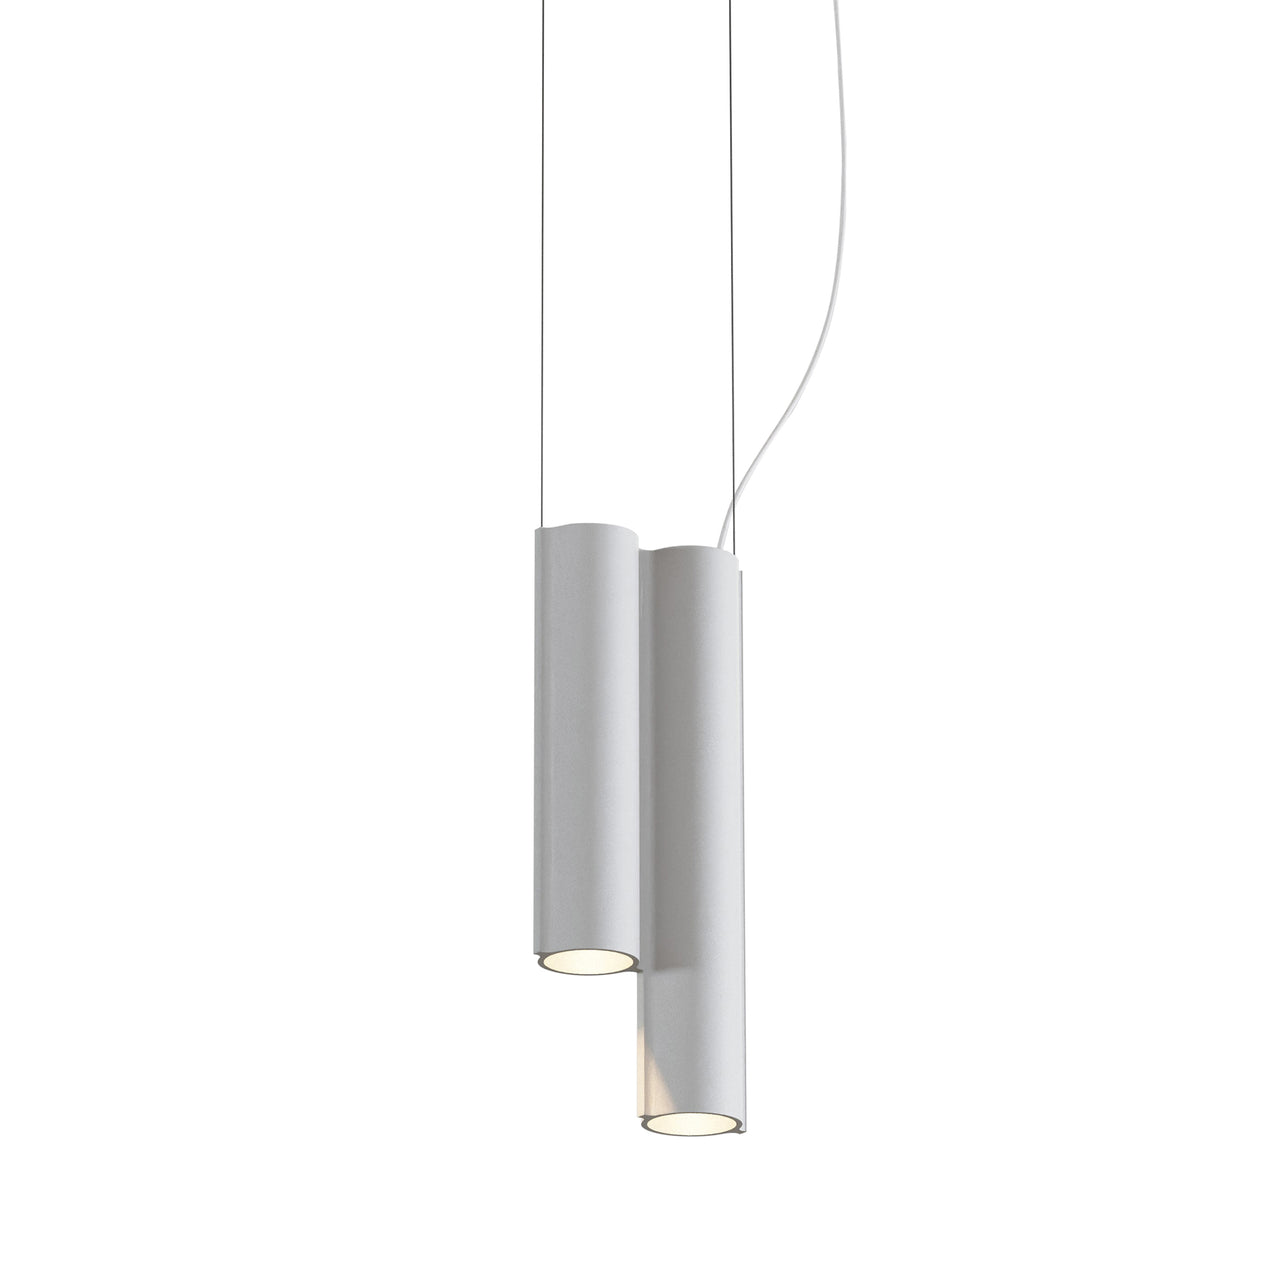 Silo 2SC Suspension Lamp: White